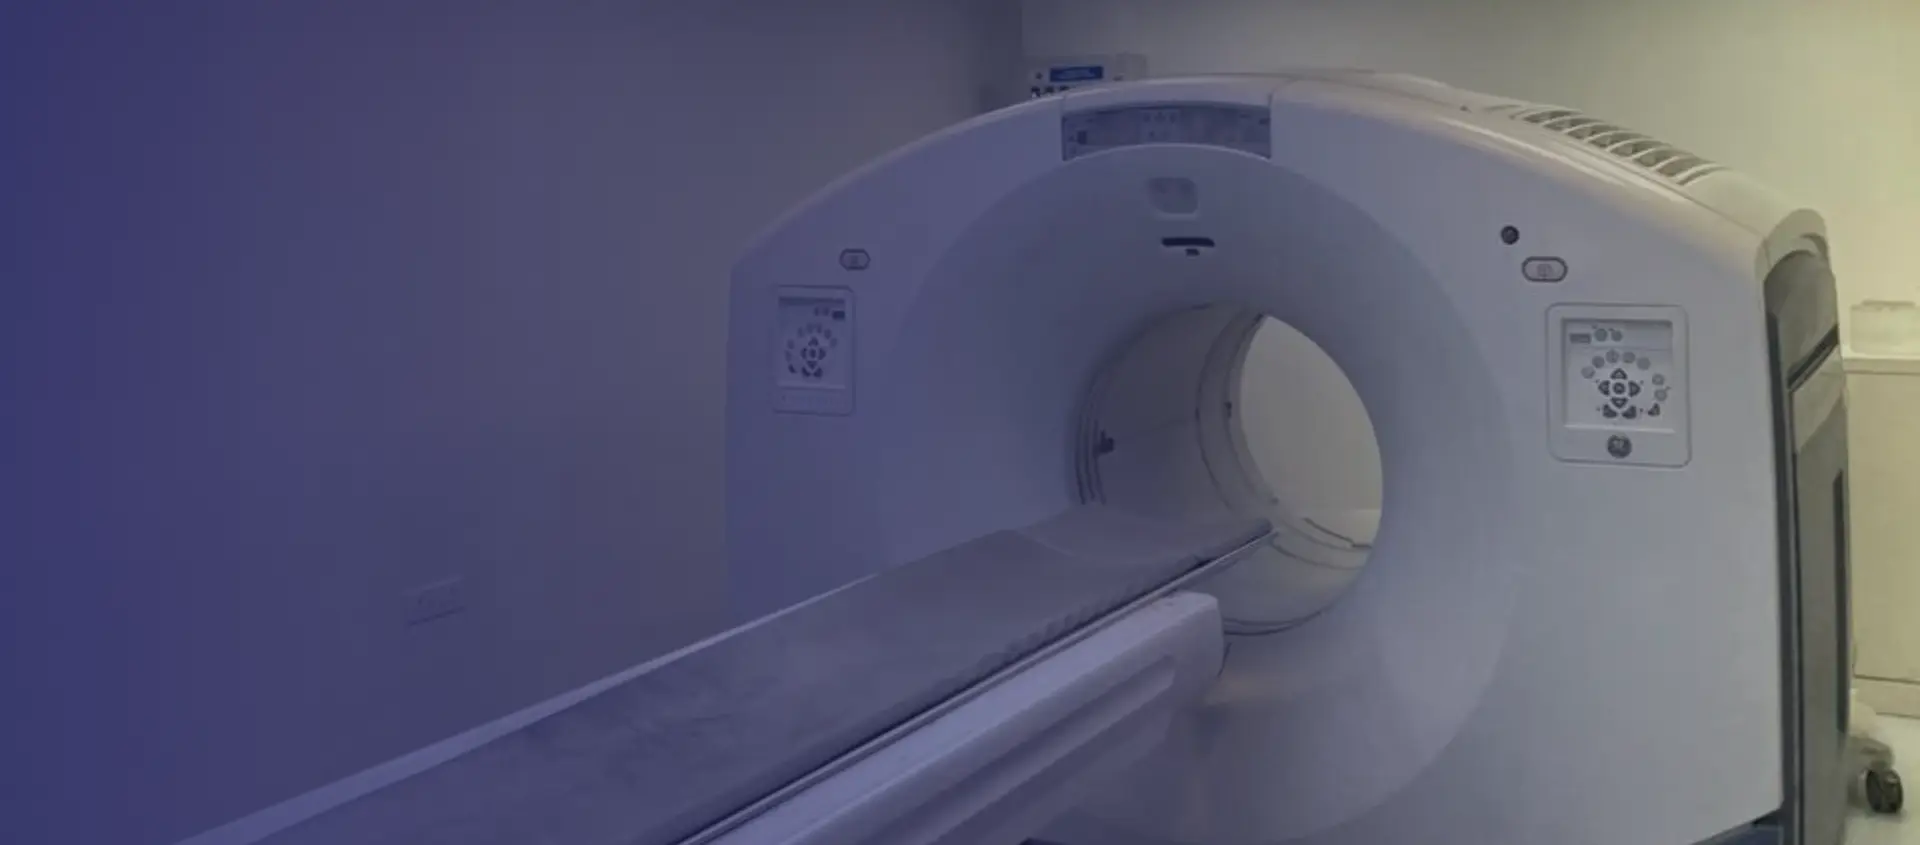 FDG Brain PET-CT Scan in Delhi